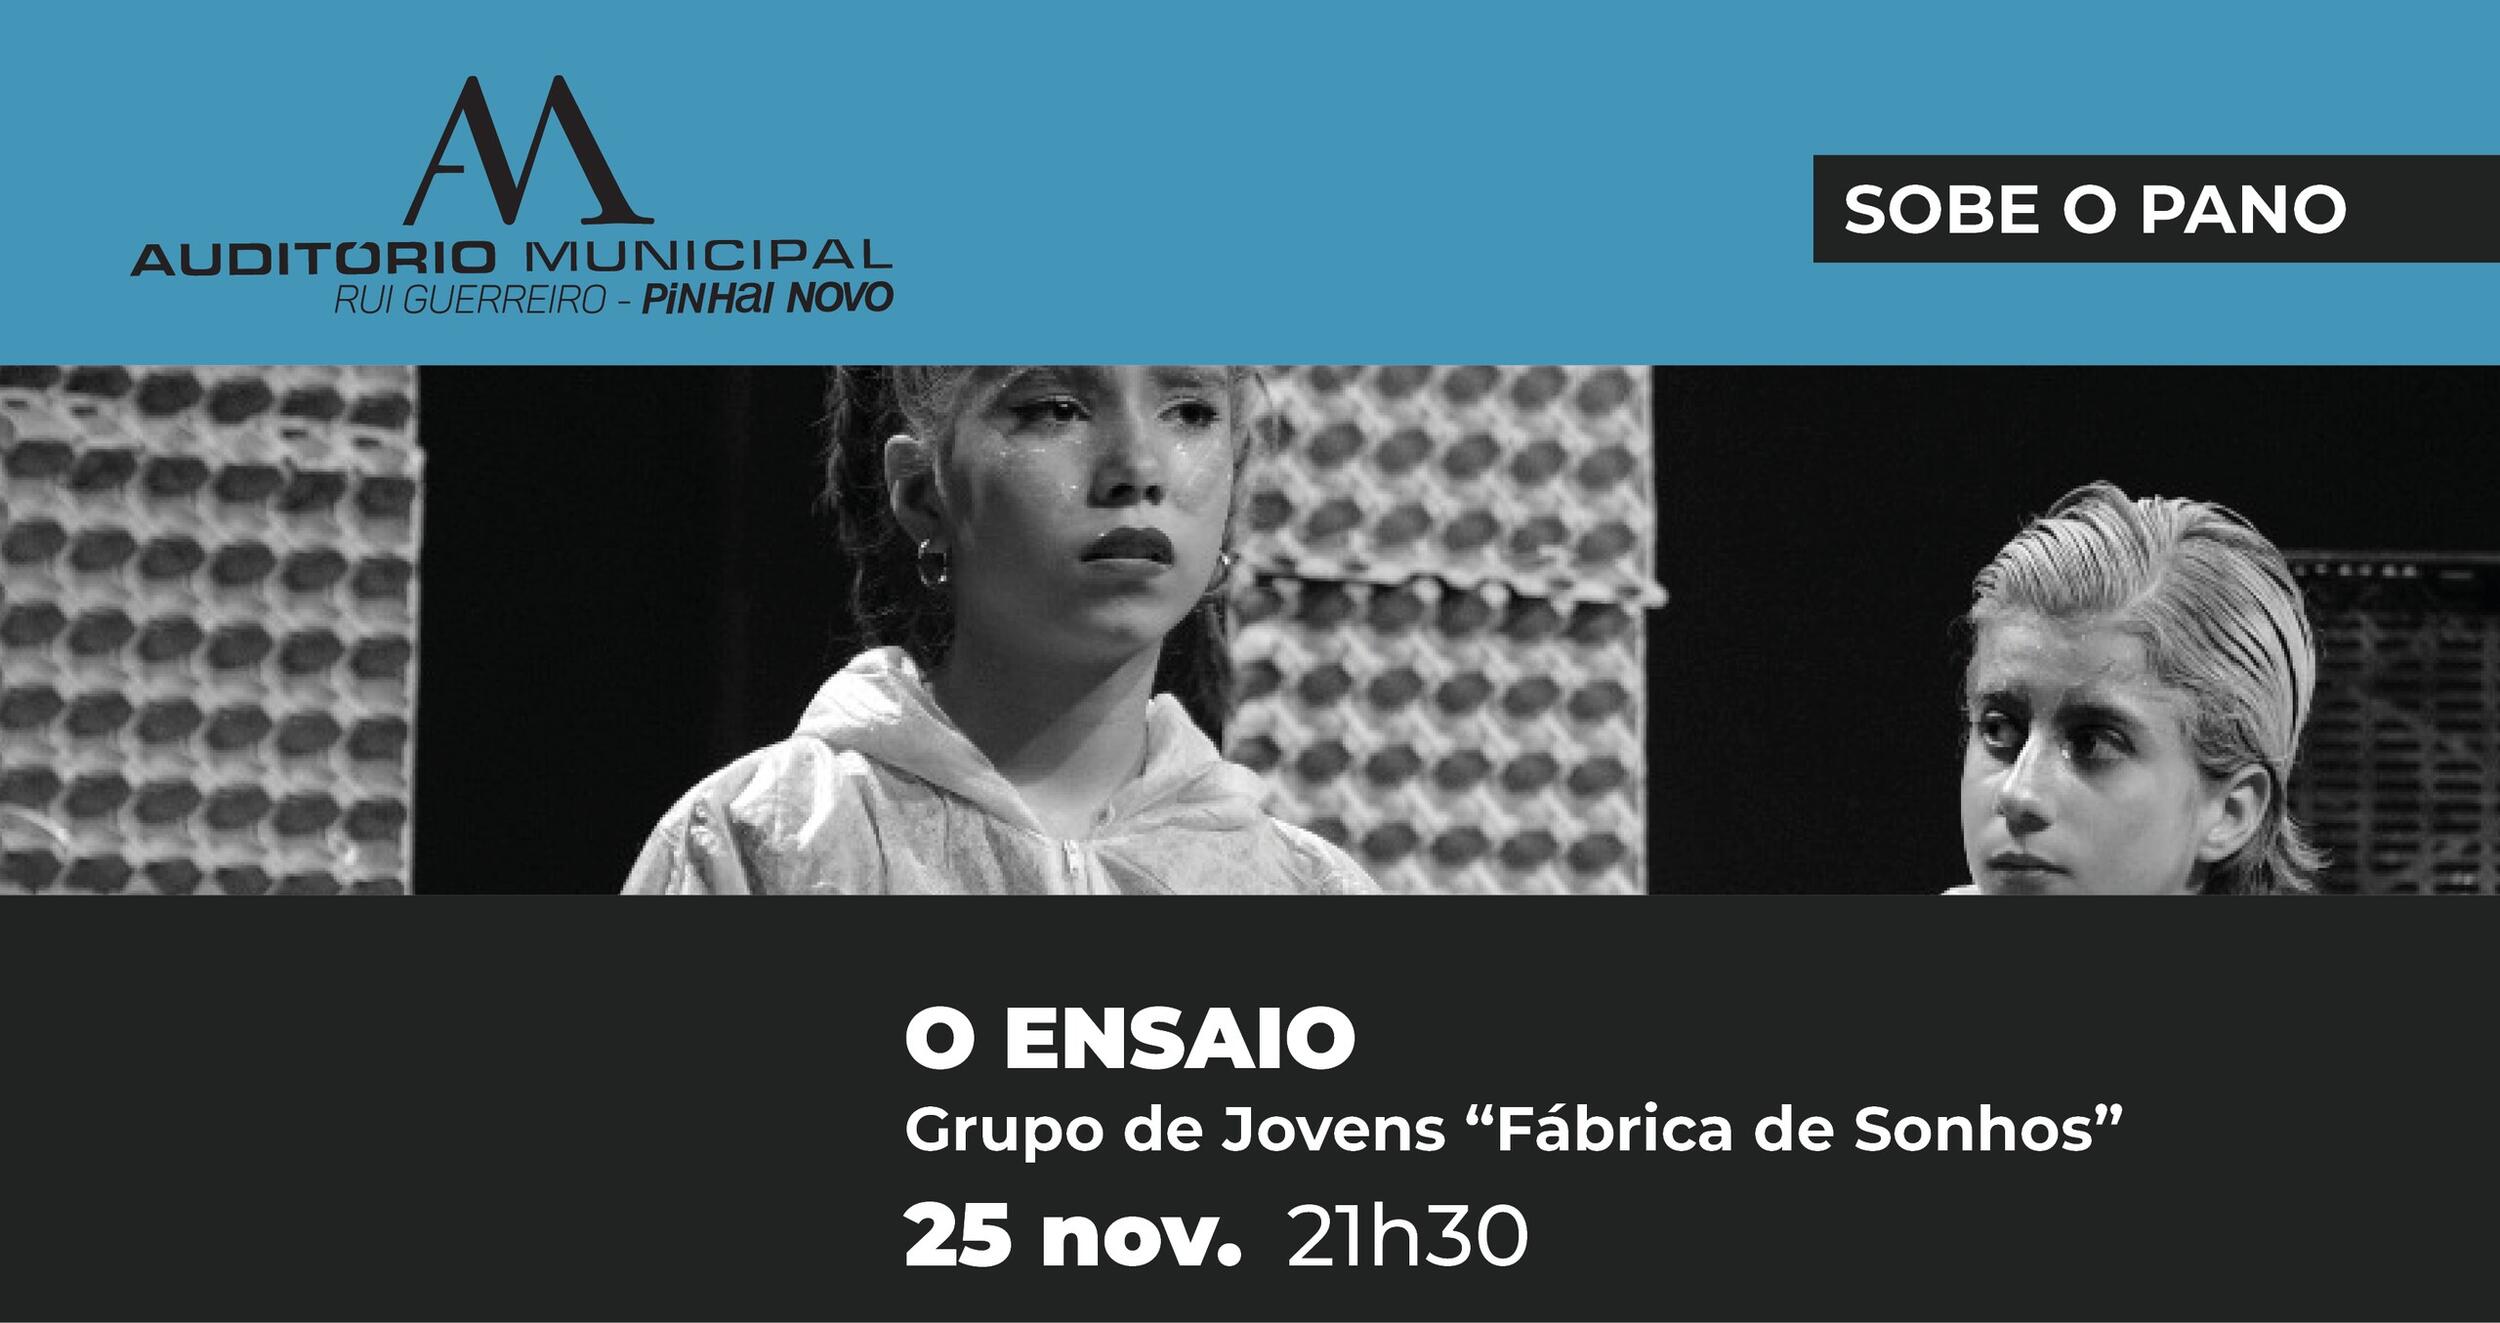 Teatro Artimanha apresenta “O Ensaio” em Pinhal Novo – 25 nov.